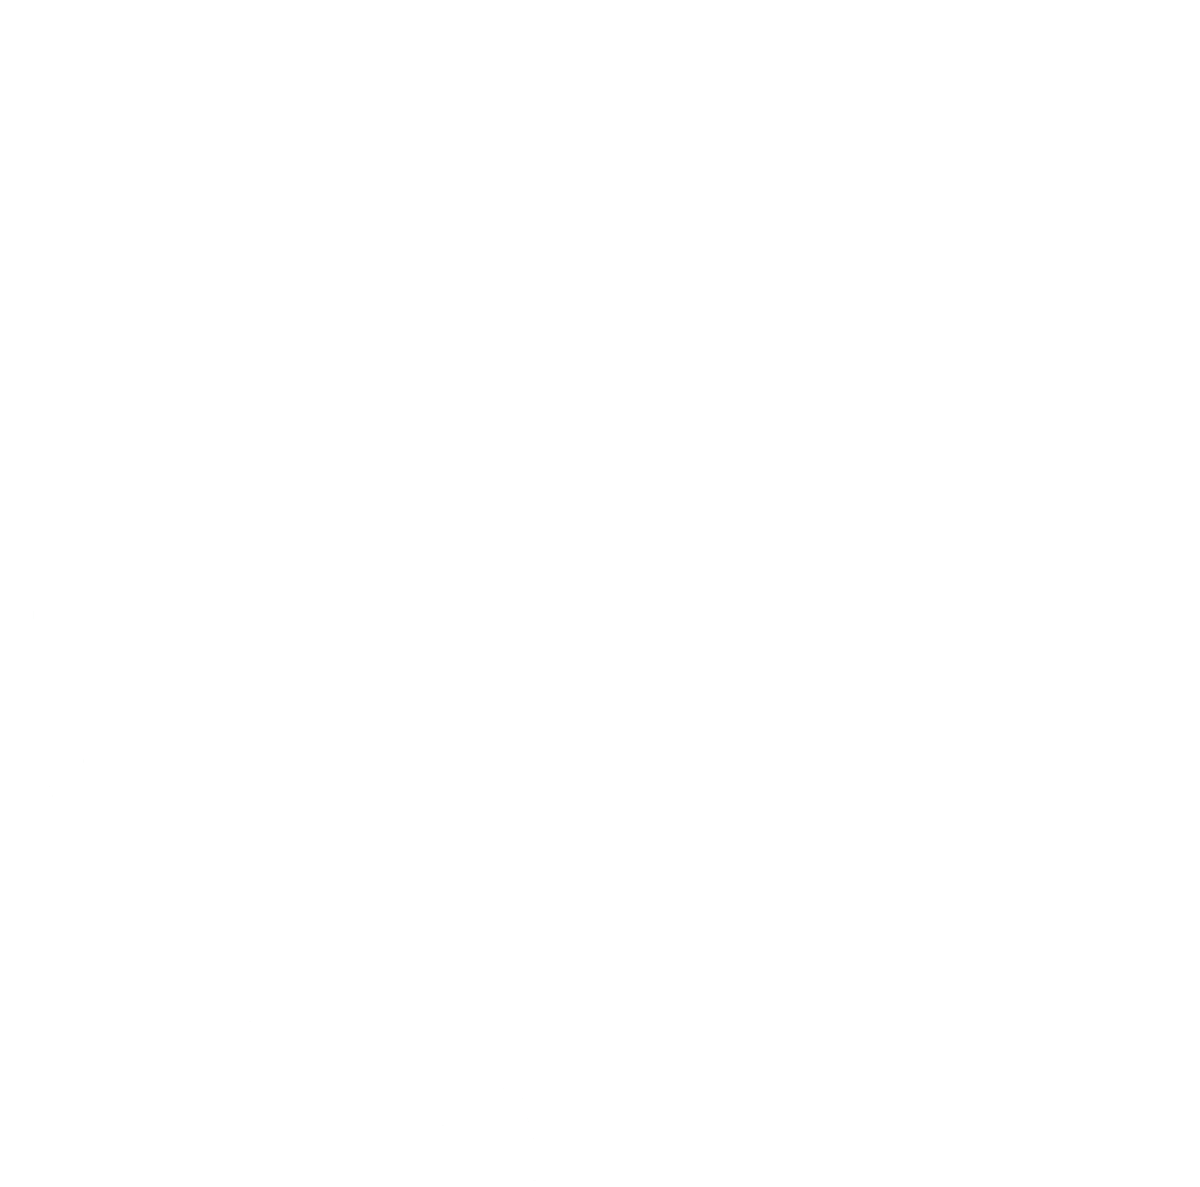 Primary Logo (Image)